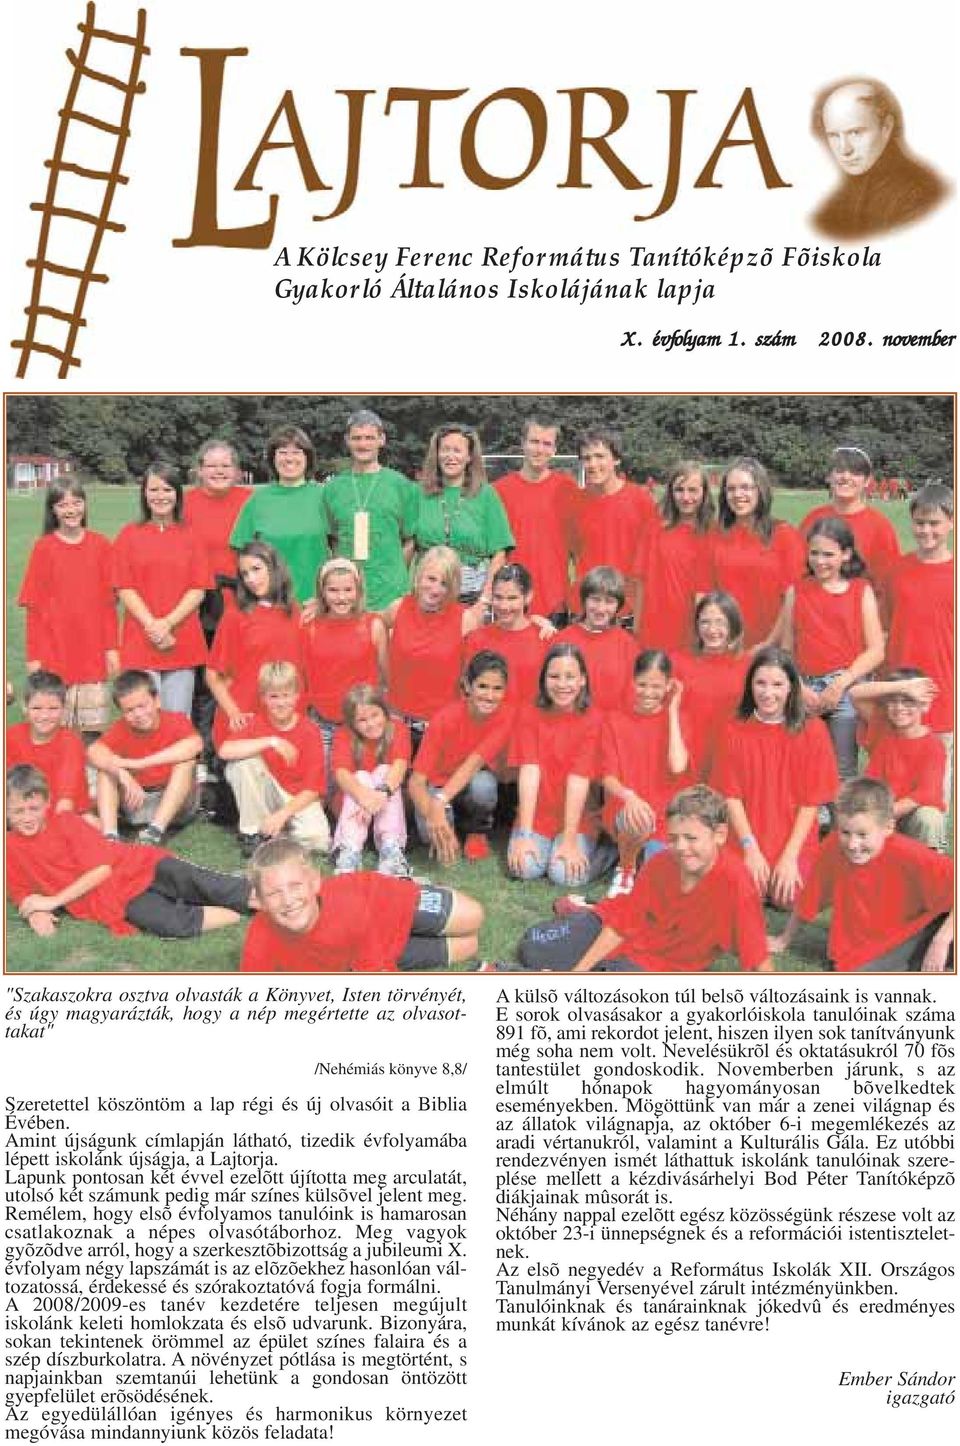 Biblia Évében. Amint újságunk címlapján látható, tizedik évfolyamába lépett iskolánk újságja, a Lajtorja.